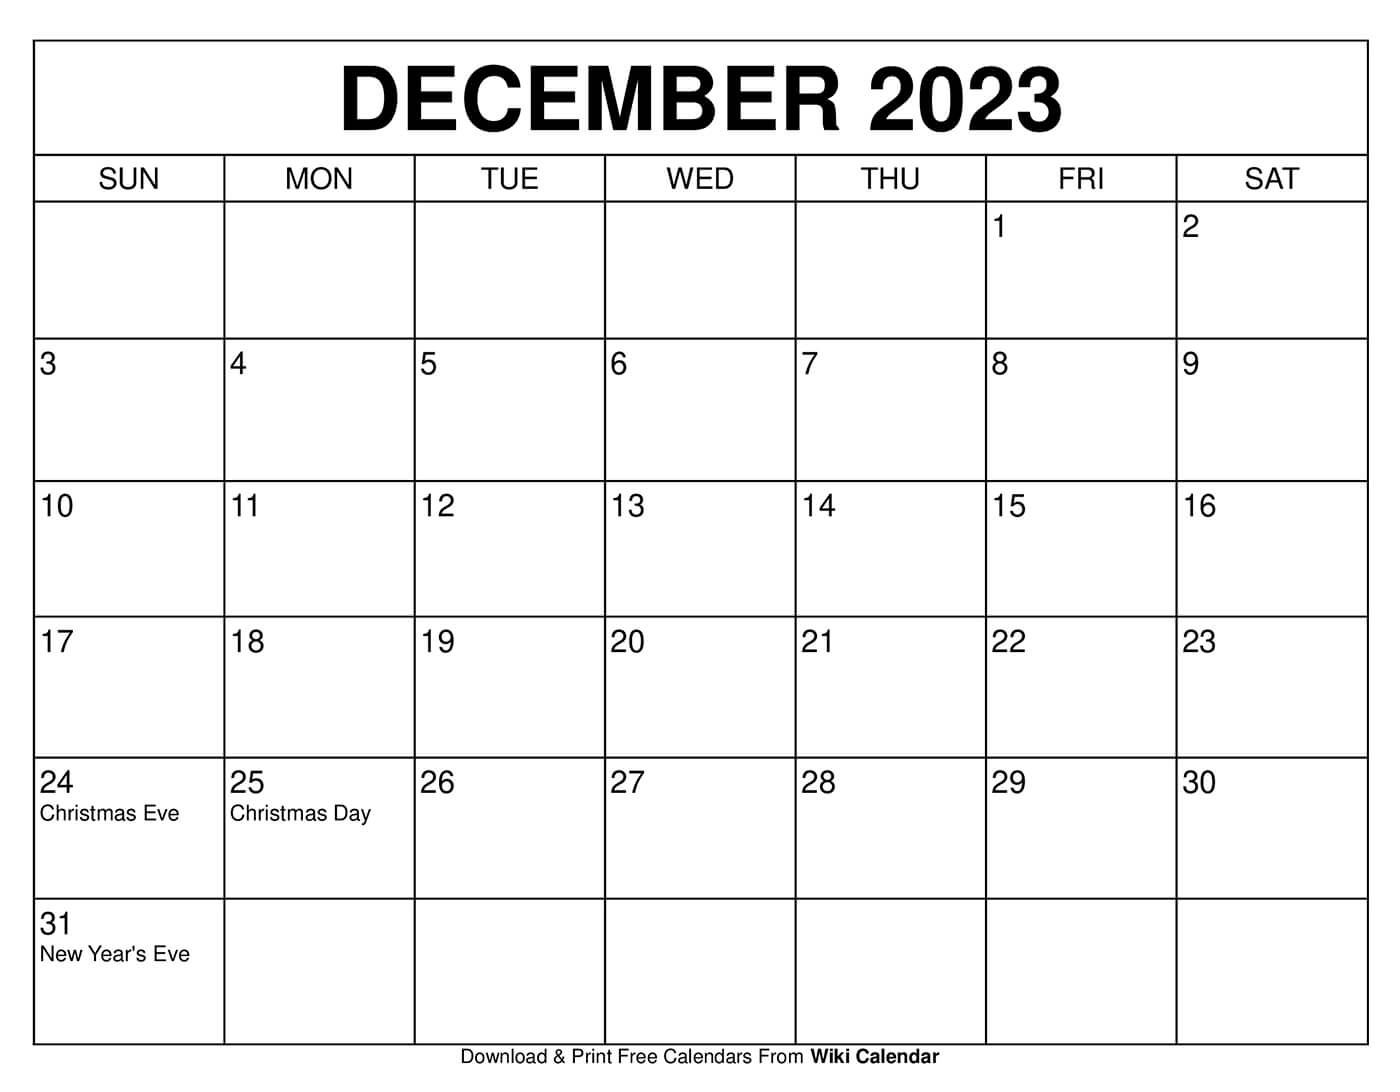 December 2023 Calendar Layout Get Calendar 2023 Update